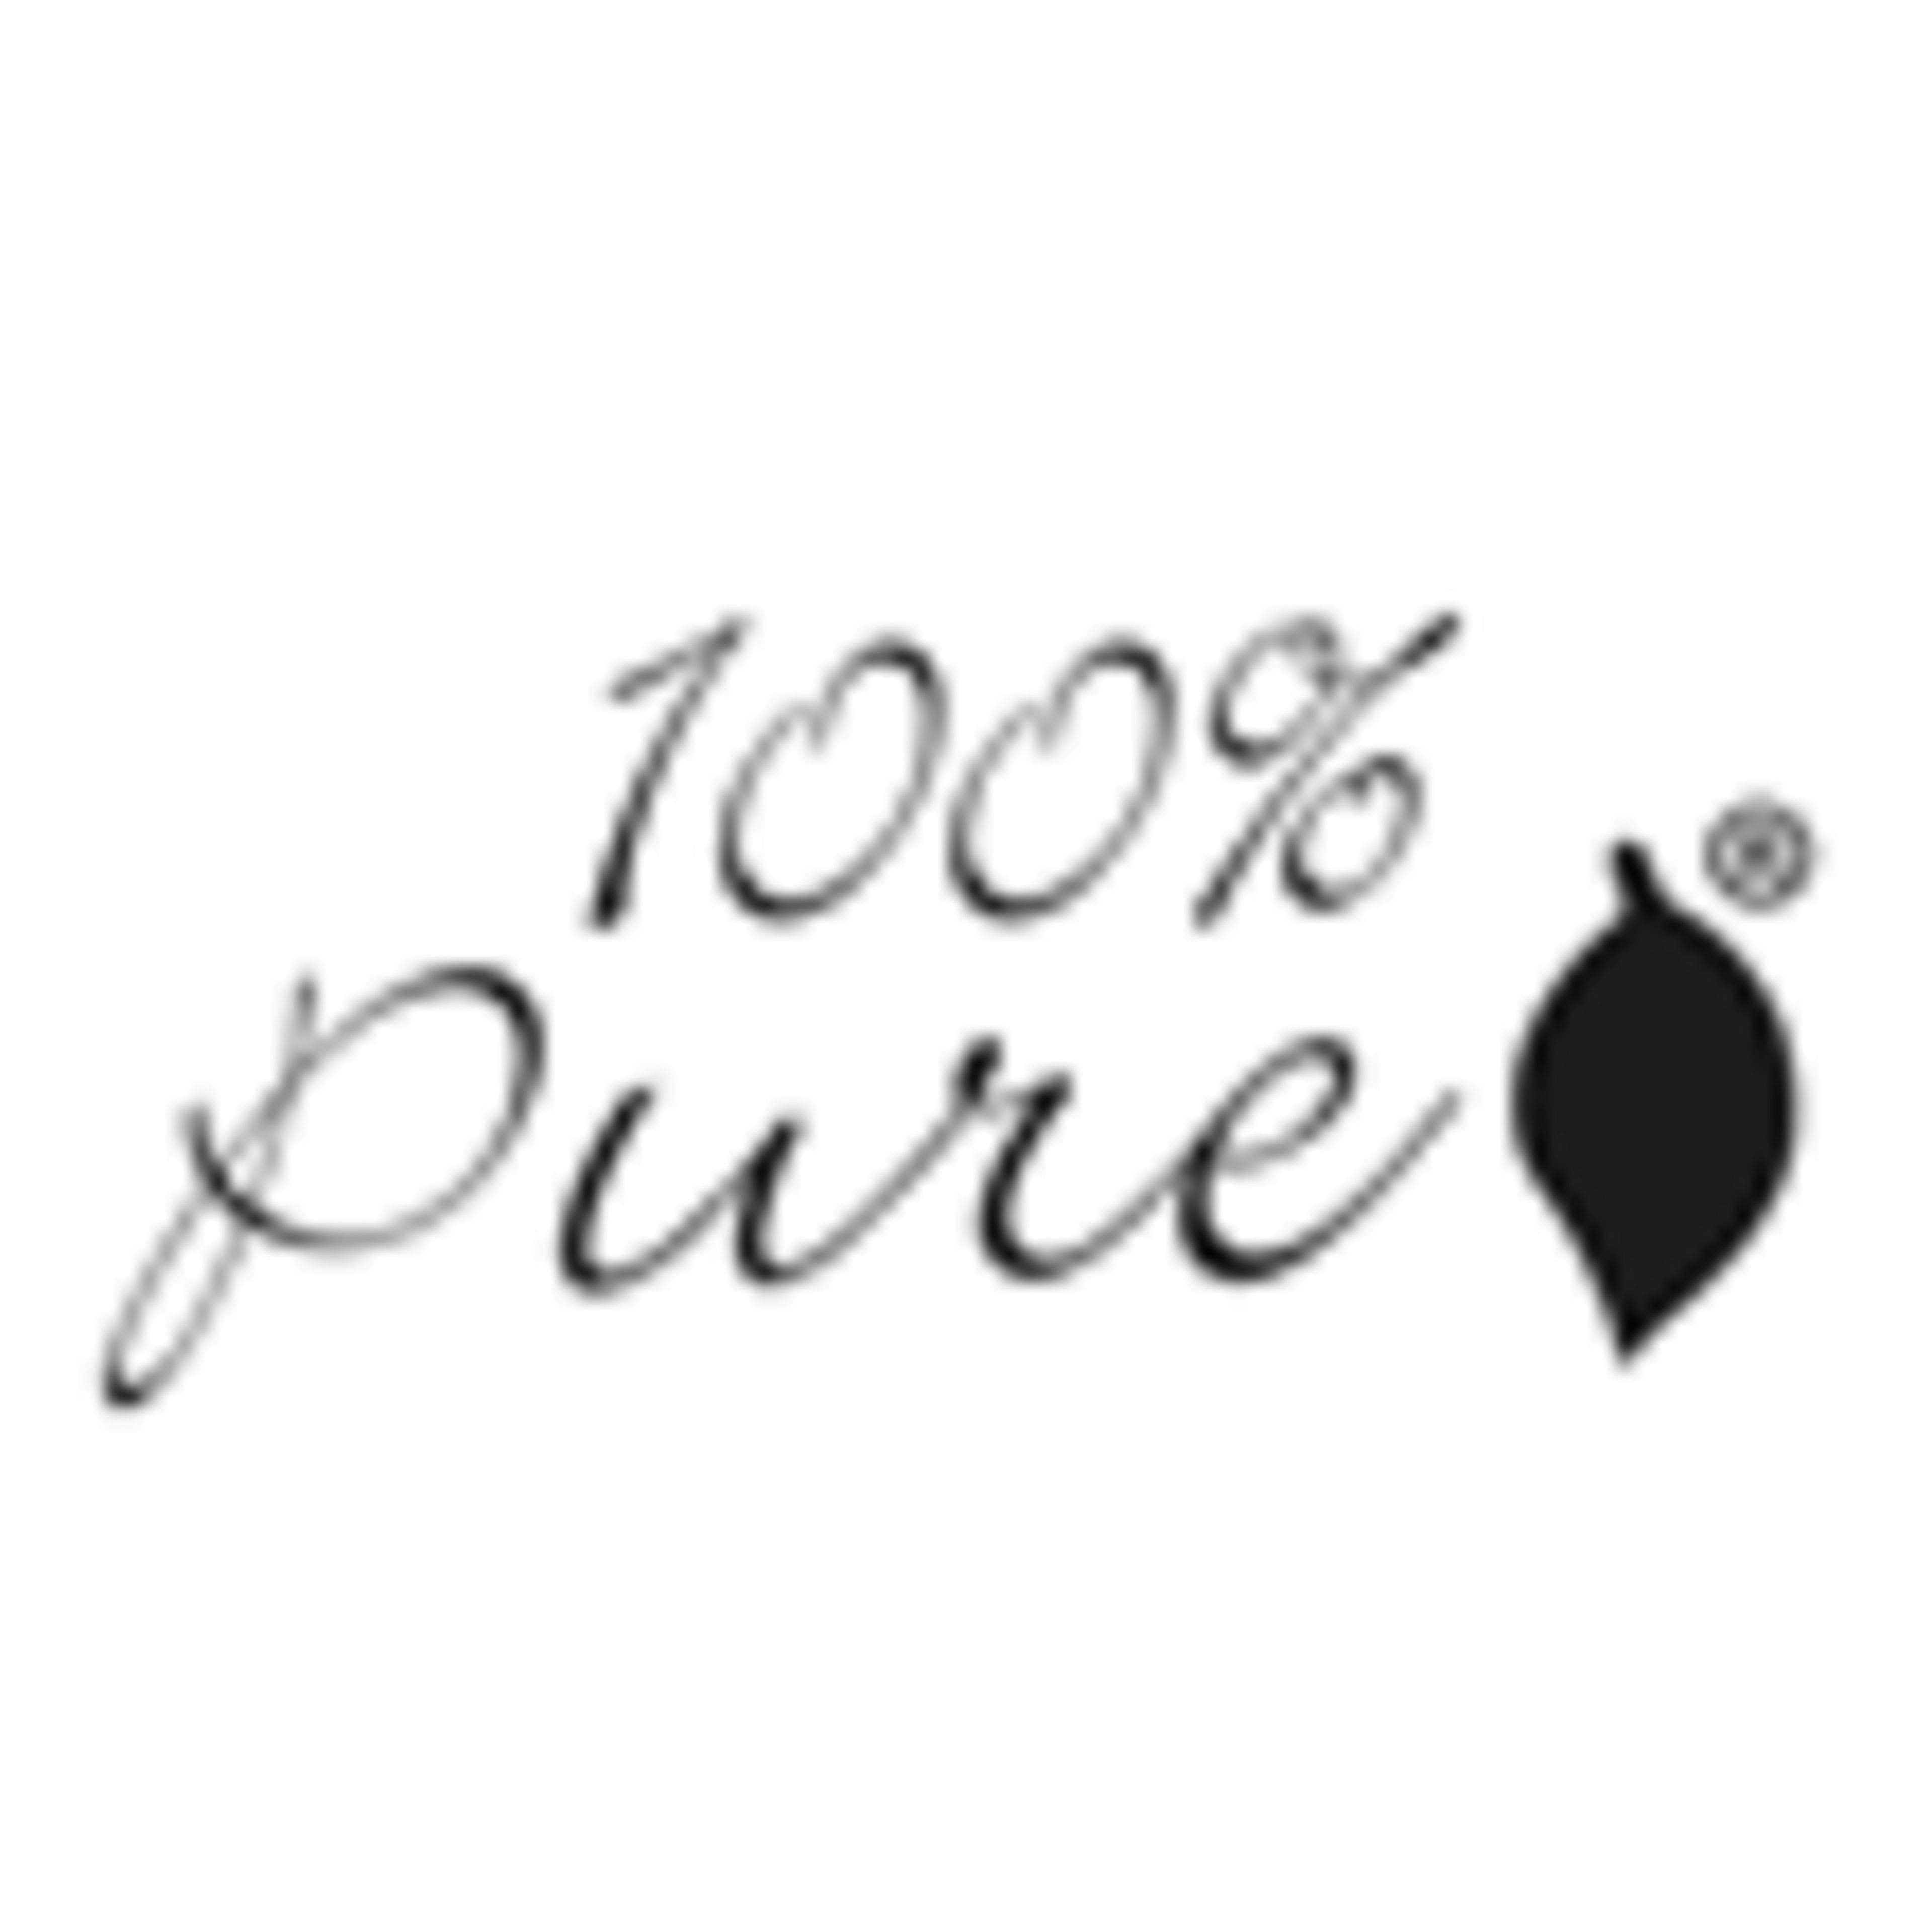 100 Percent PureCode